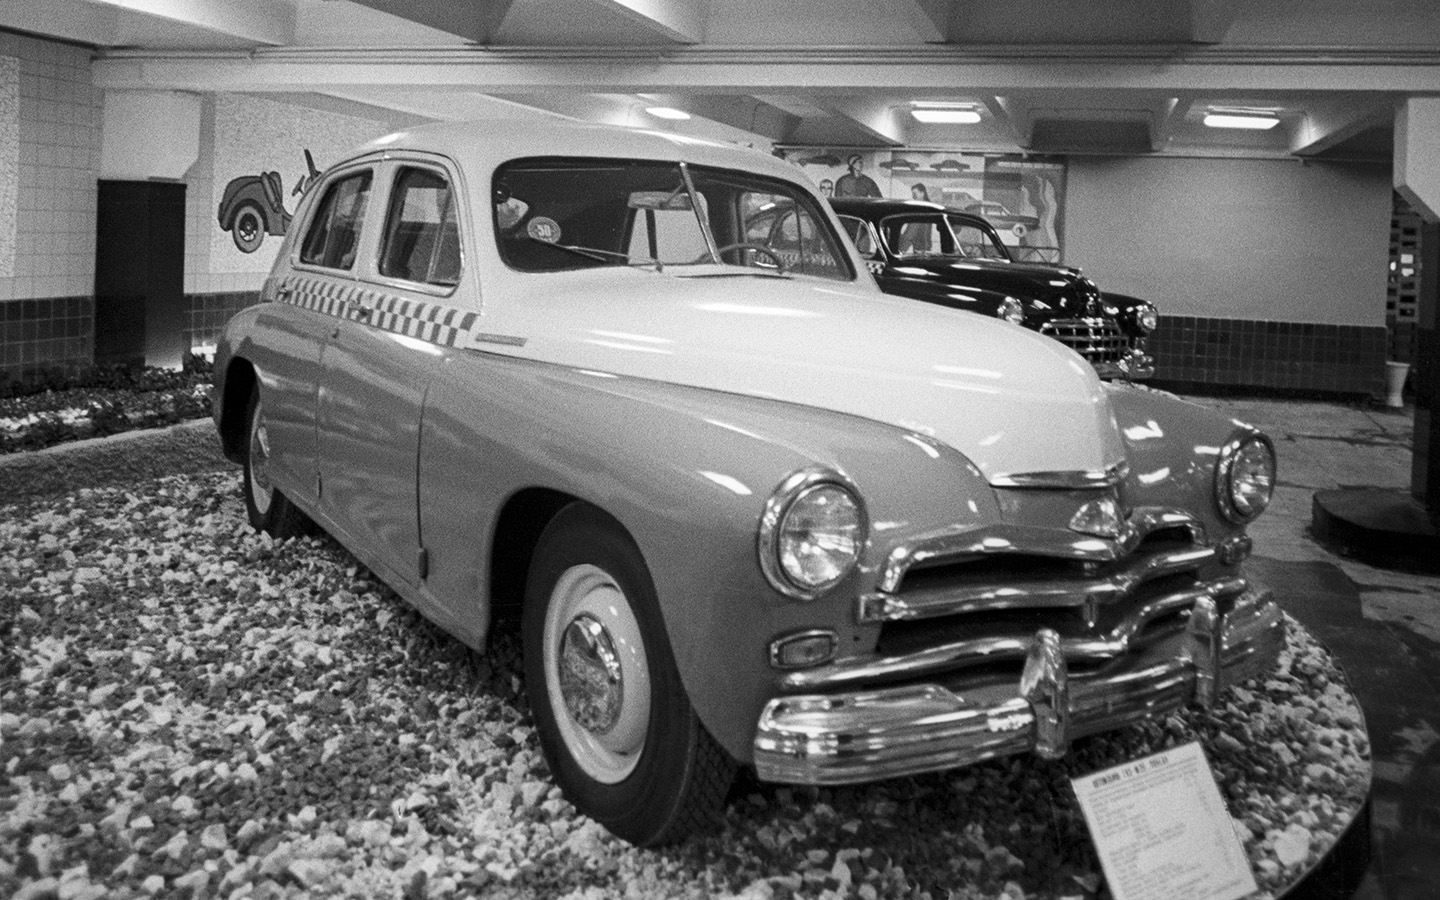 Советский легковой автомобиль ГАЗ-М-20 &laquo;Победа&raquo;, представленный в Музее такси на территории 19-го таксомоторного парка. Москва. Июнь 1975 г.